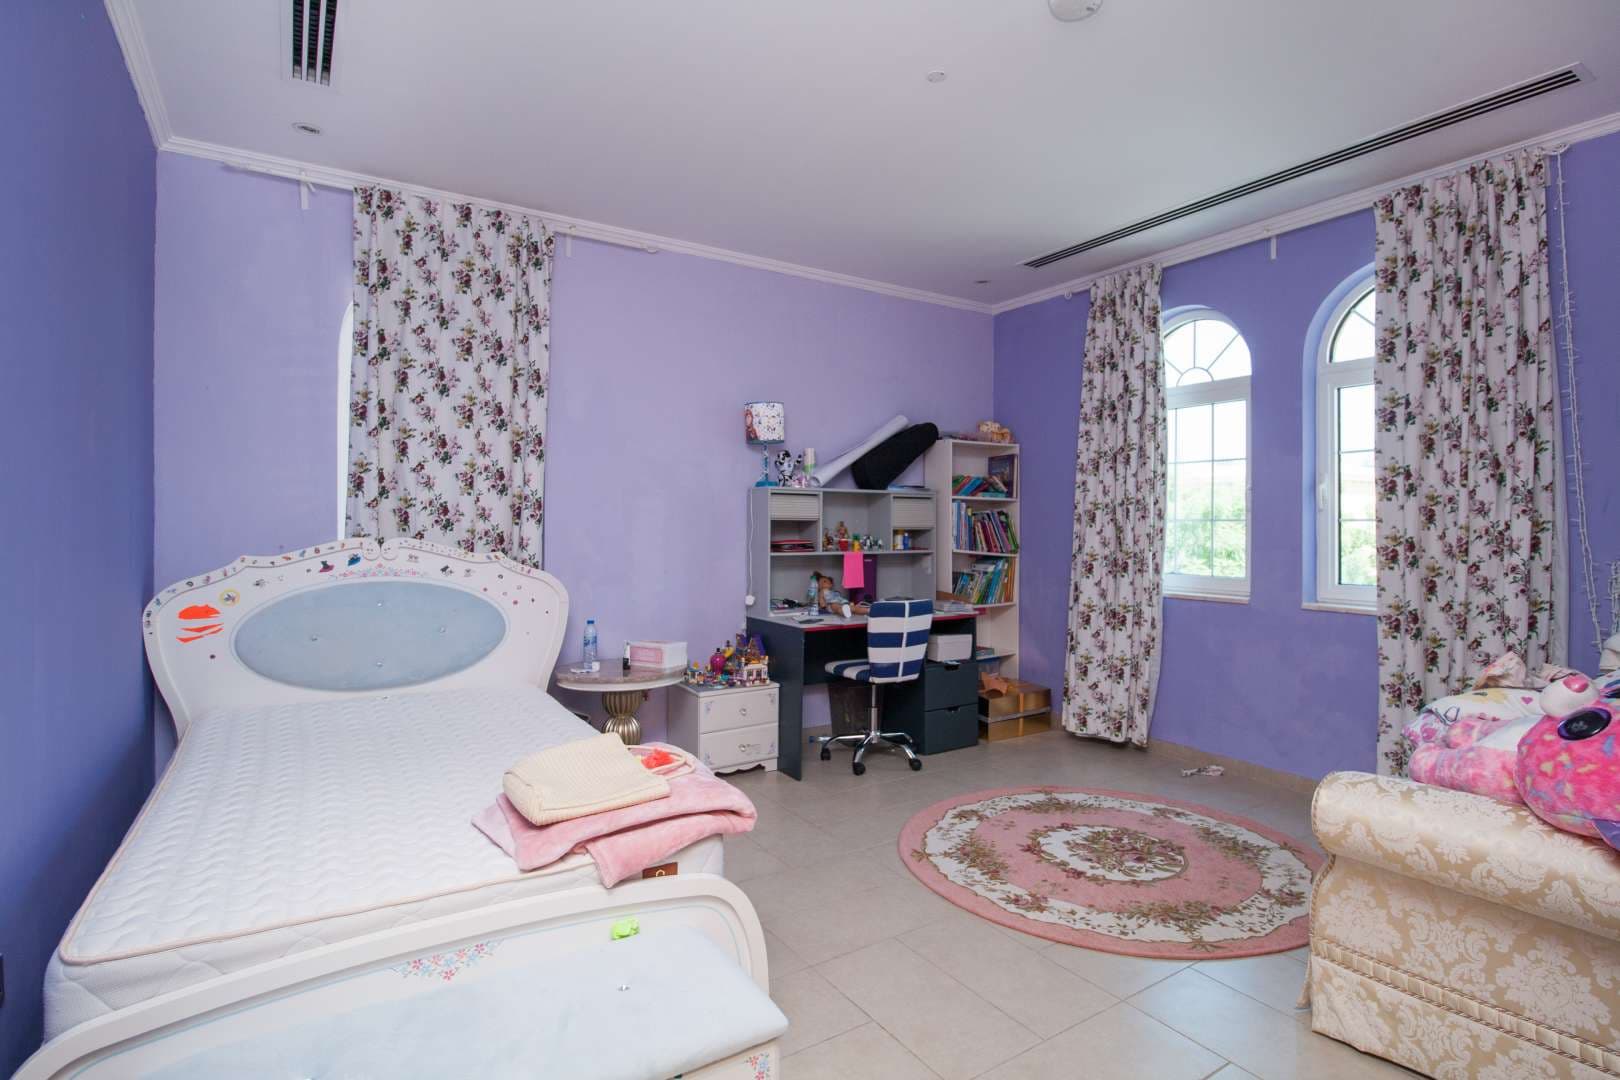 5 Bedroom Villa For Sale Legacy Lp04698 271afd071cdcc800.jpg